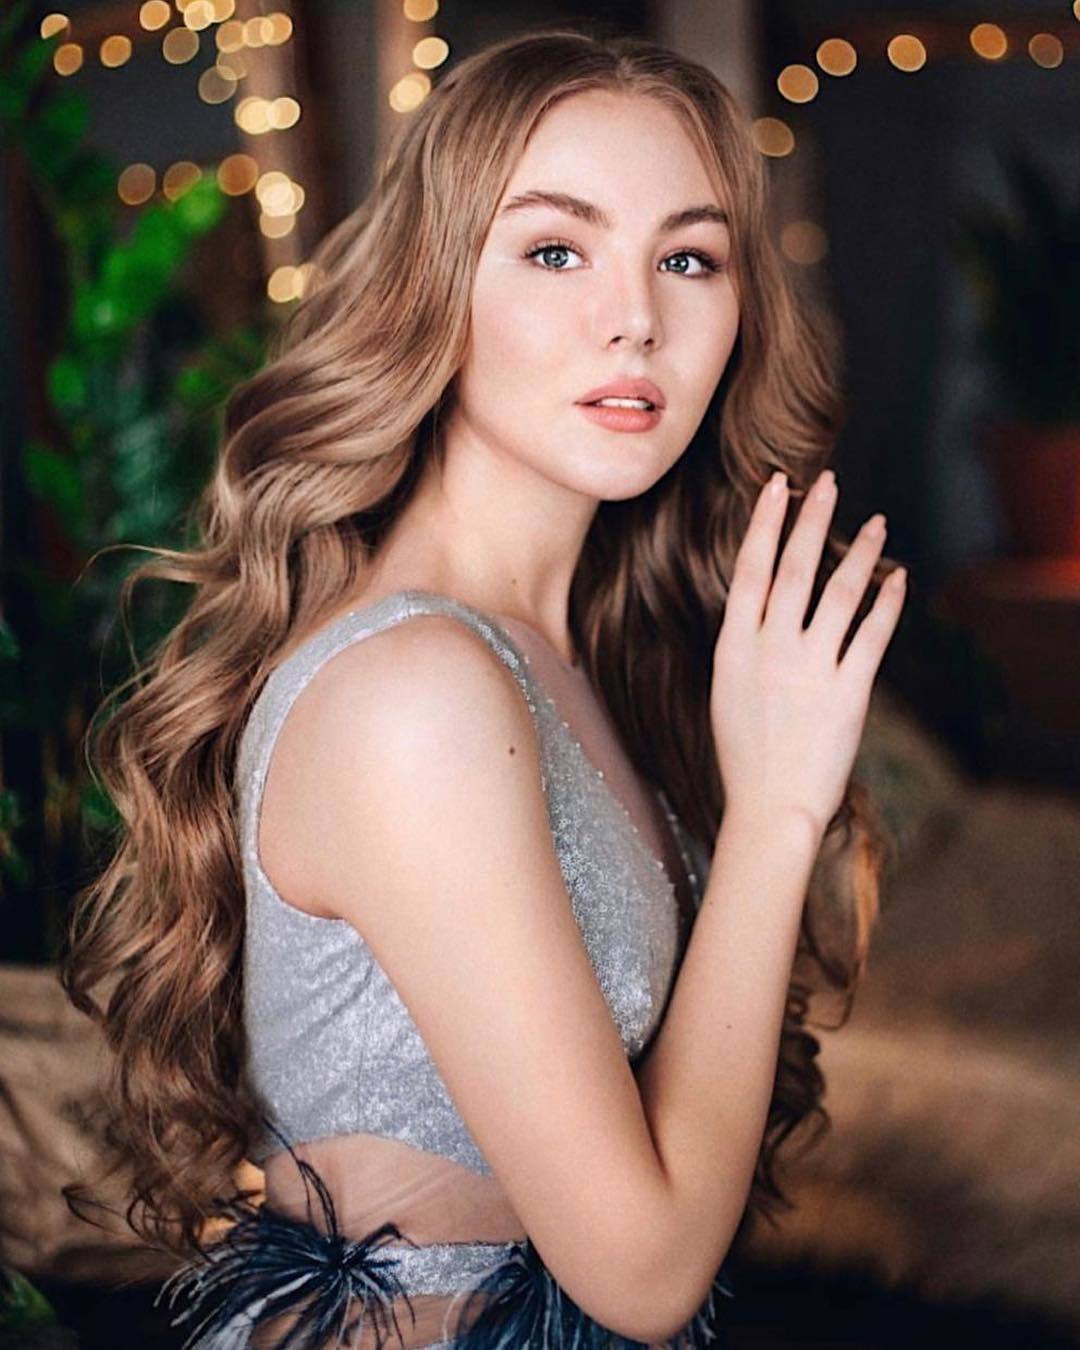 Фотография Влады Потаповой в аккаунте конкурса "Мисс Россия" набрала рекордное количество лайков